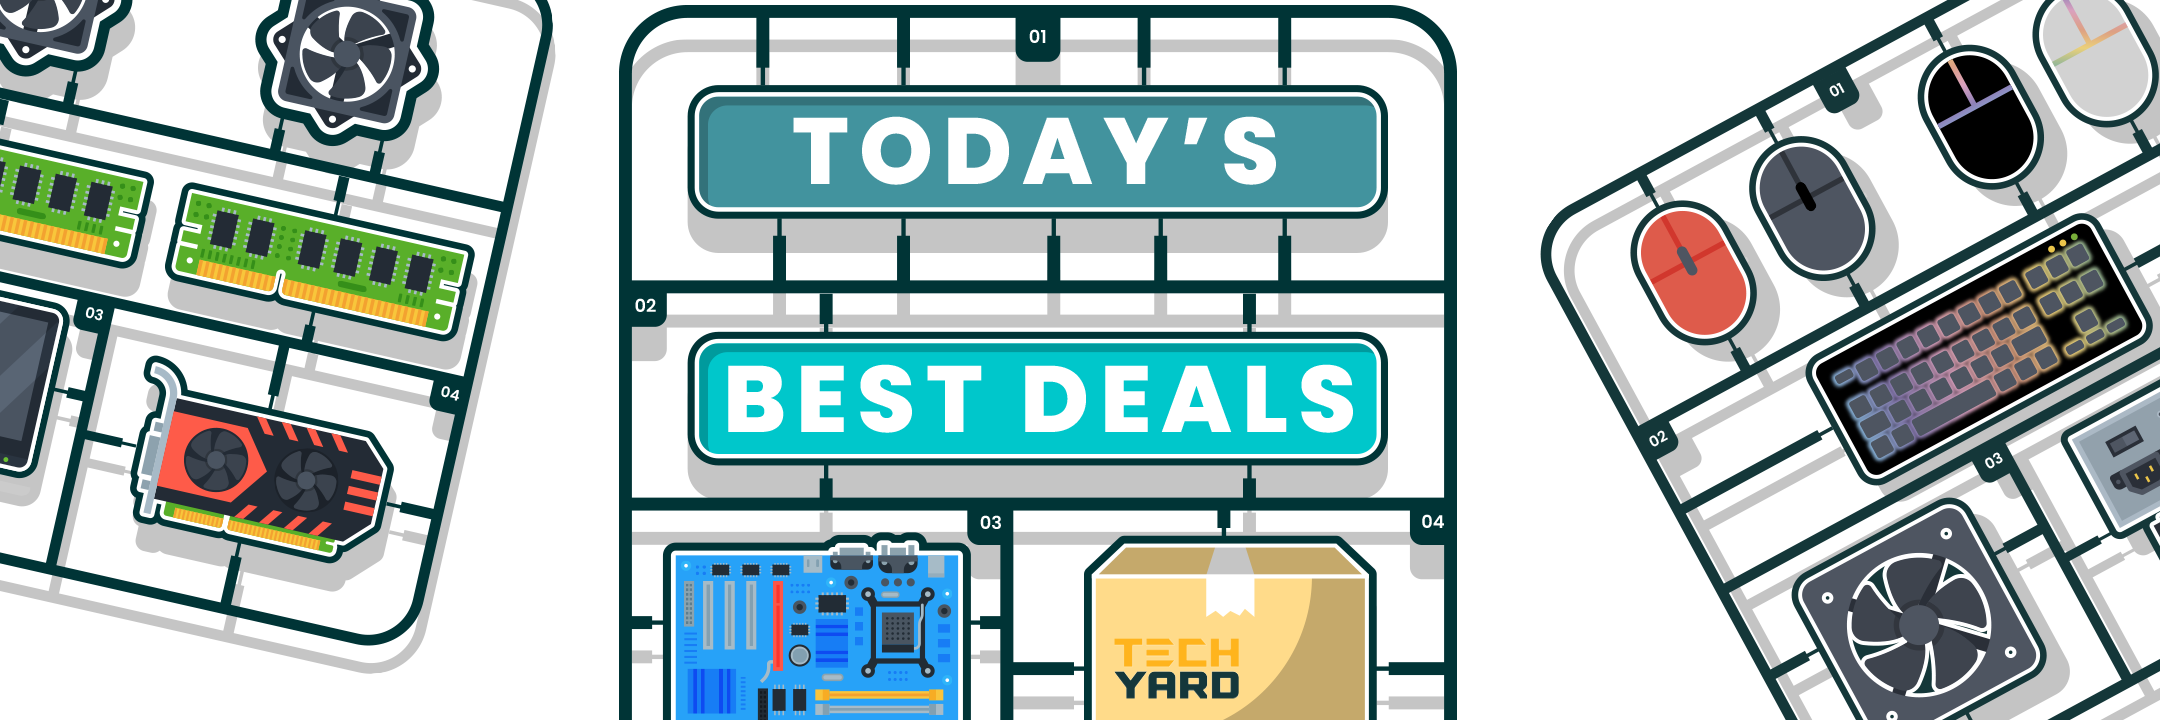 Today's Best Deals